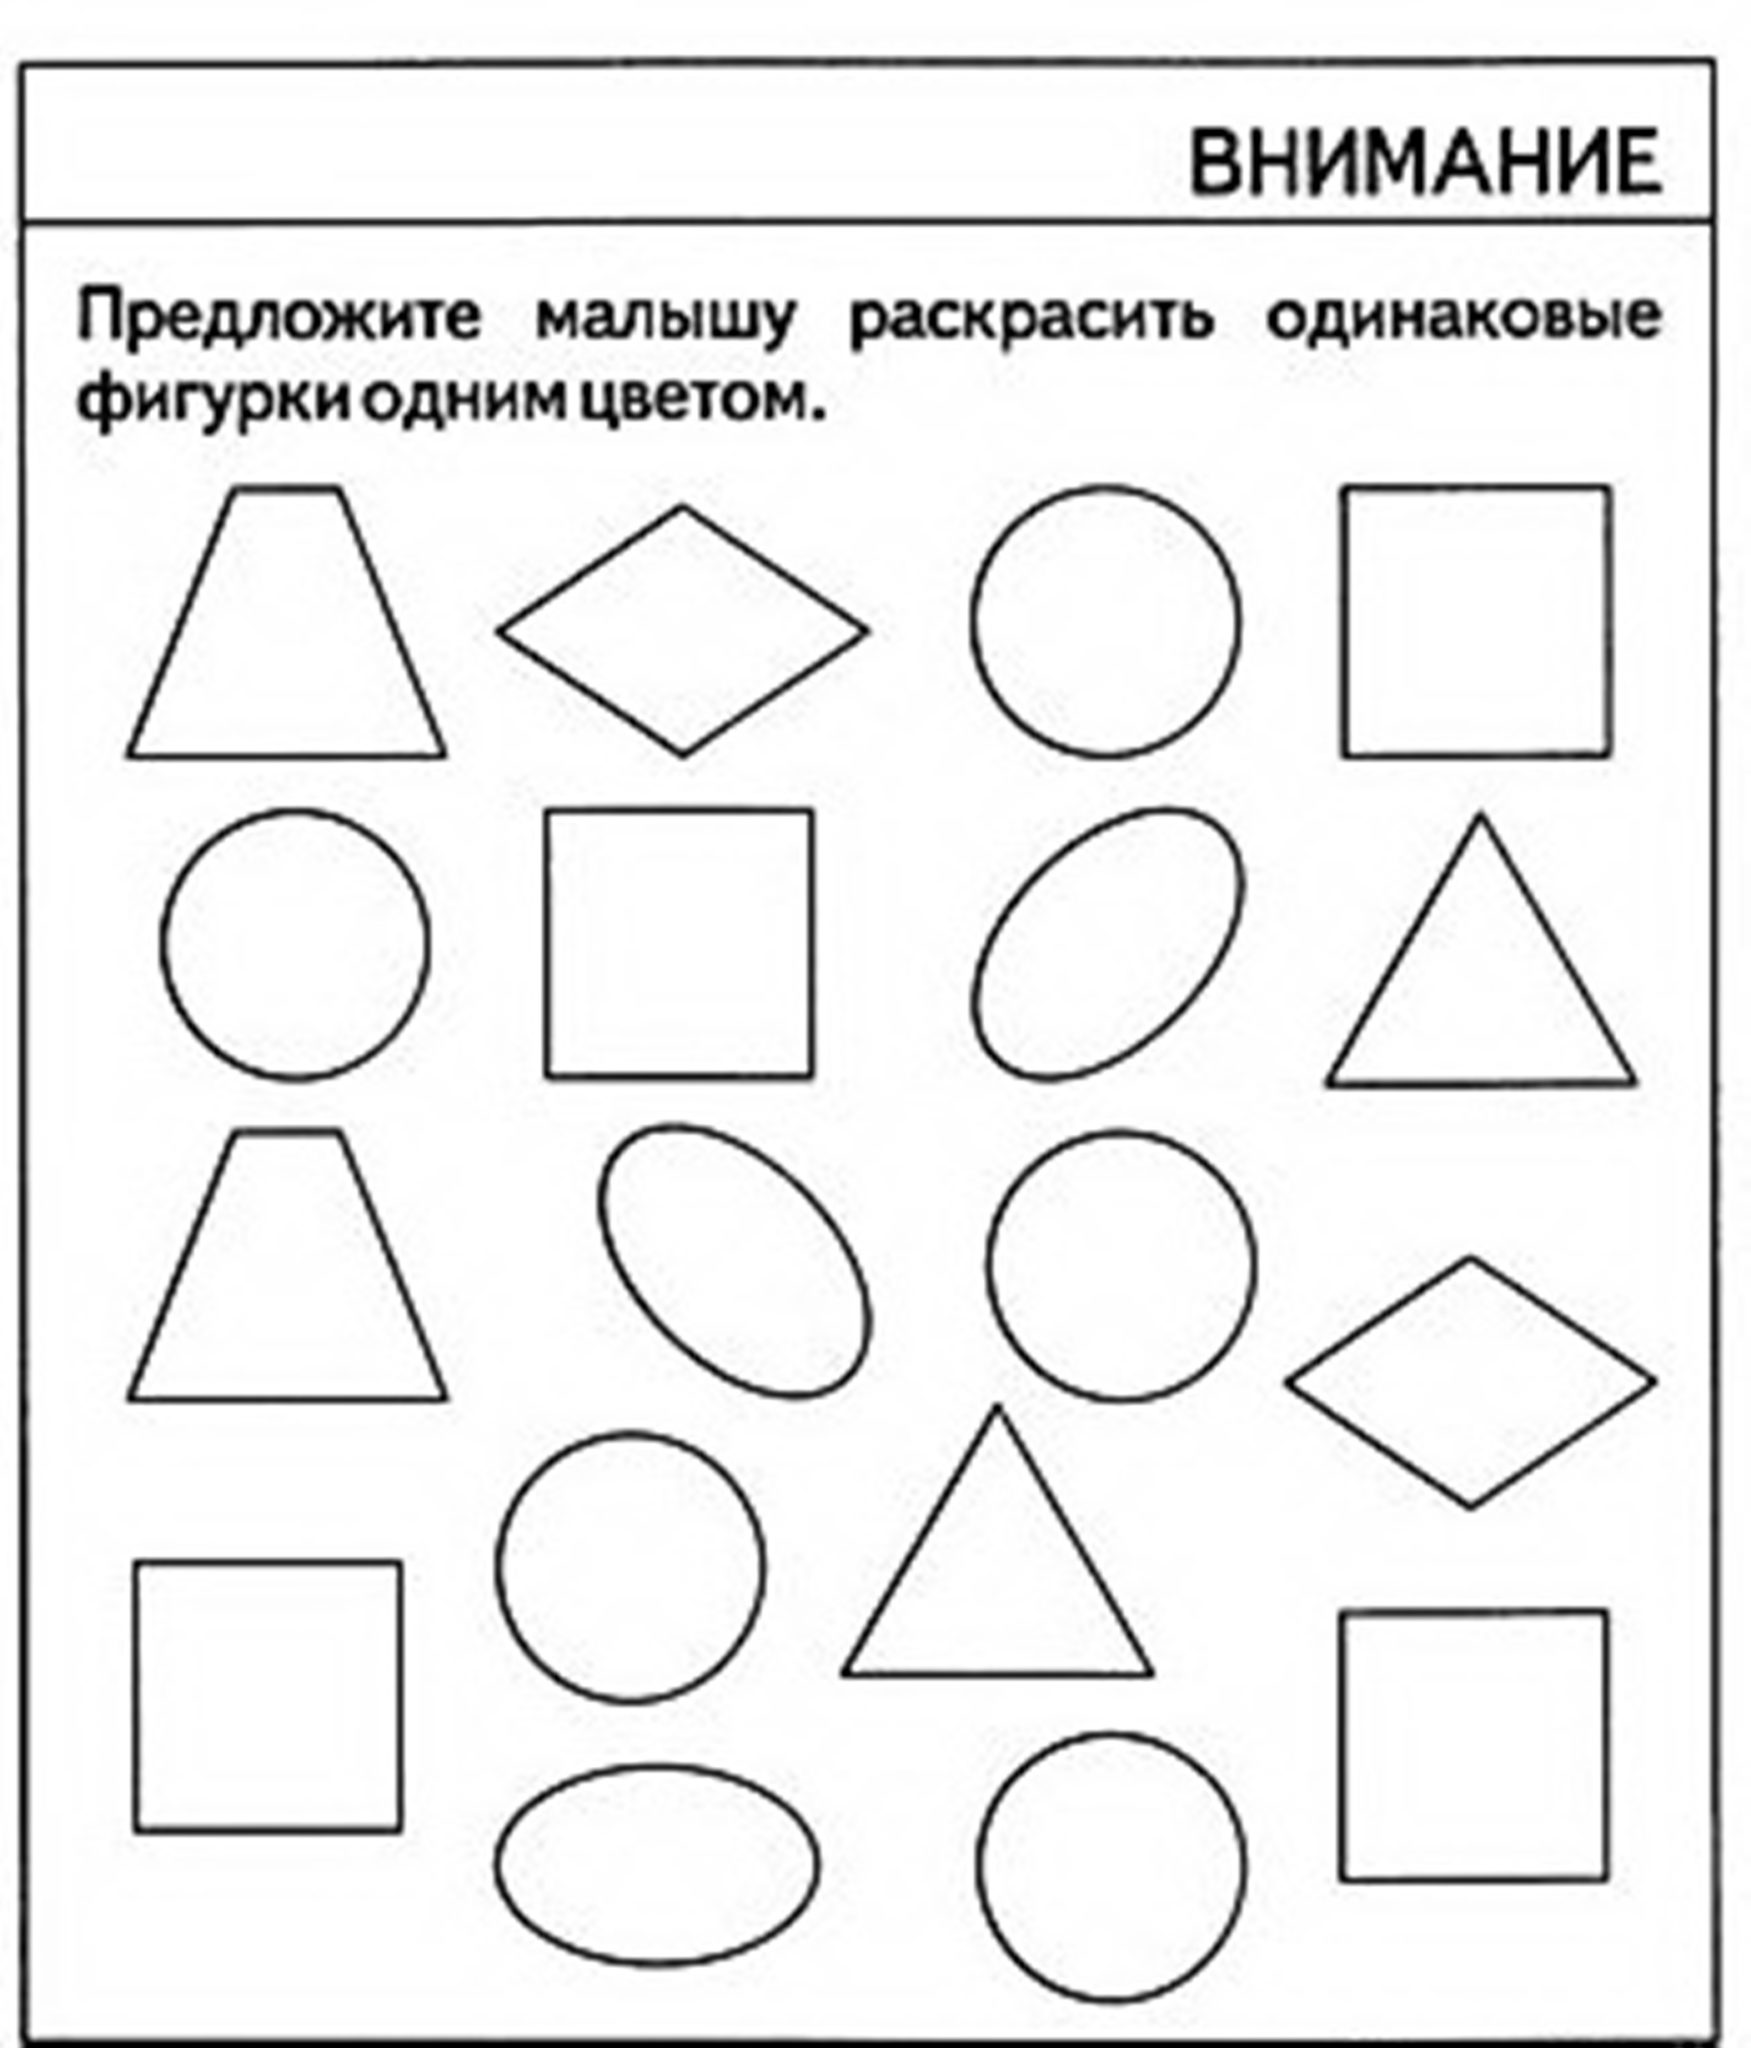 Задания для детей 4 лет геометрические фигуры